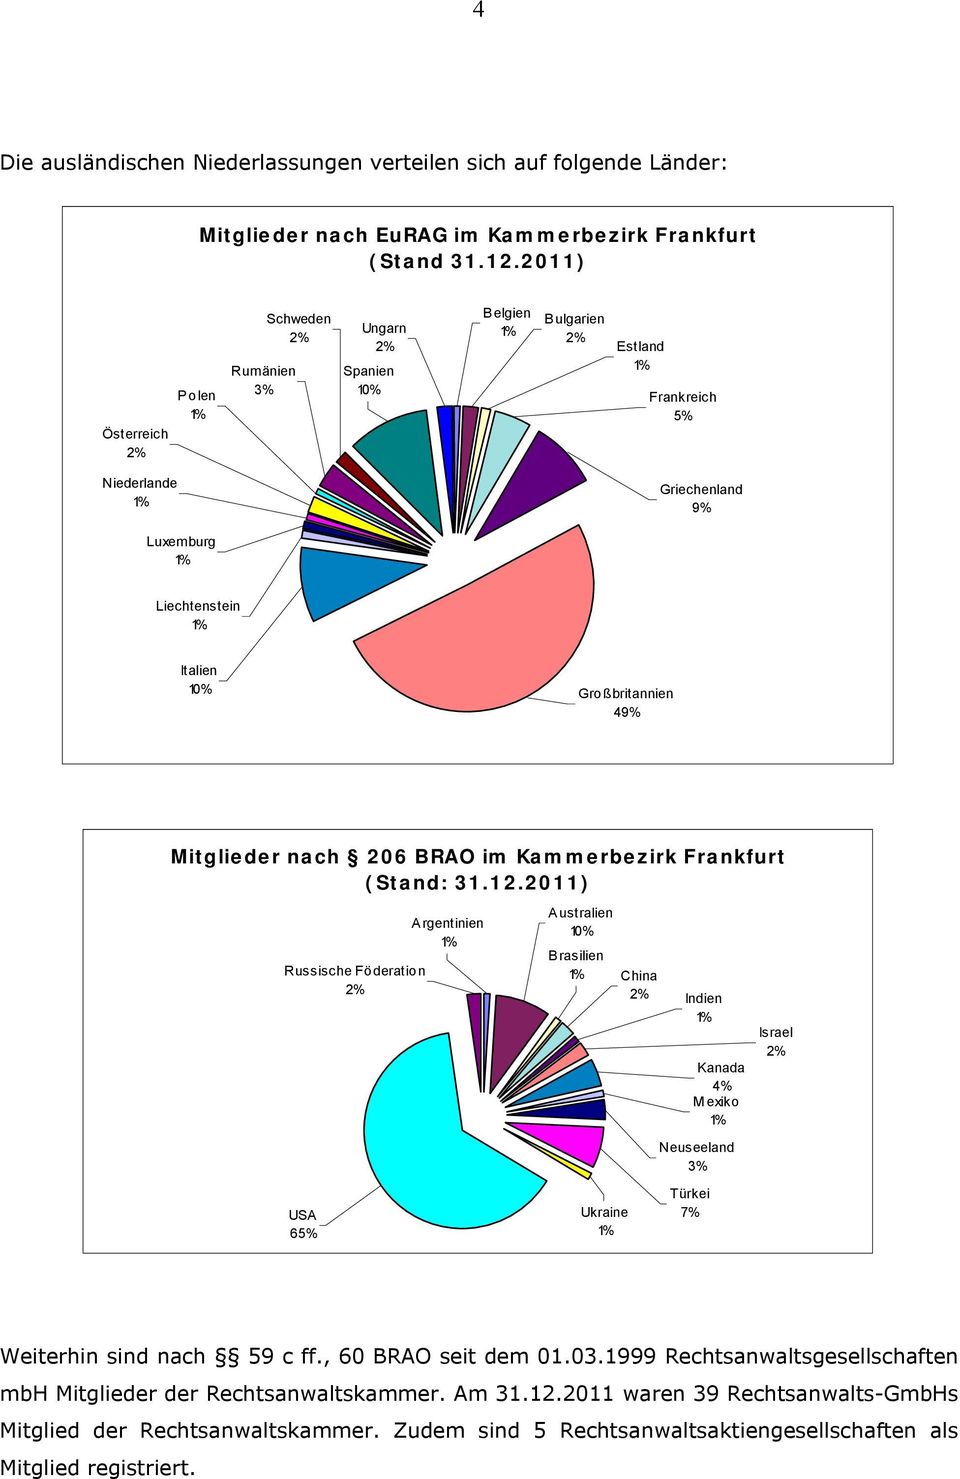 Gro ßbritannien 49% Mitglieder nach 206 BRAO im Kammerbezirk Frankfurt (Stand: 31.12.